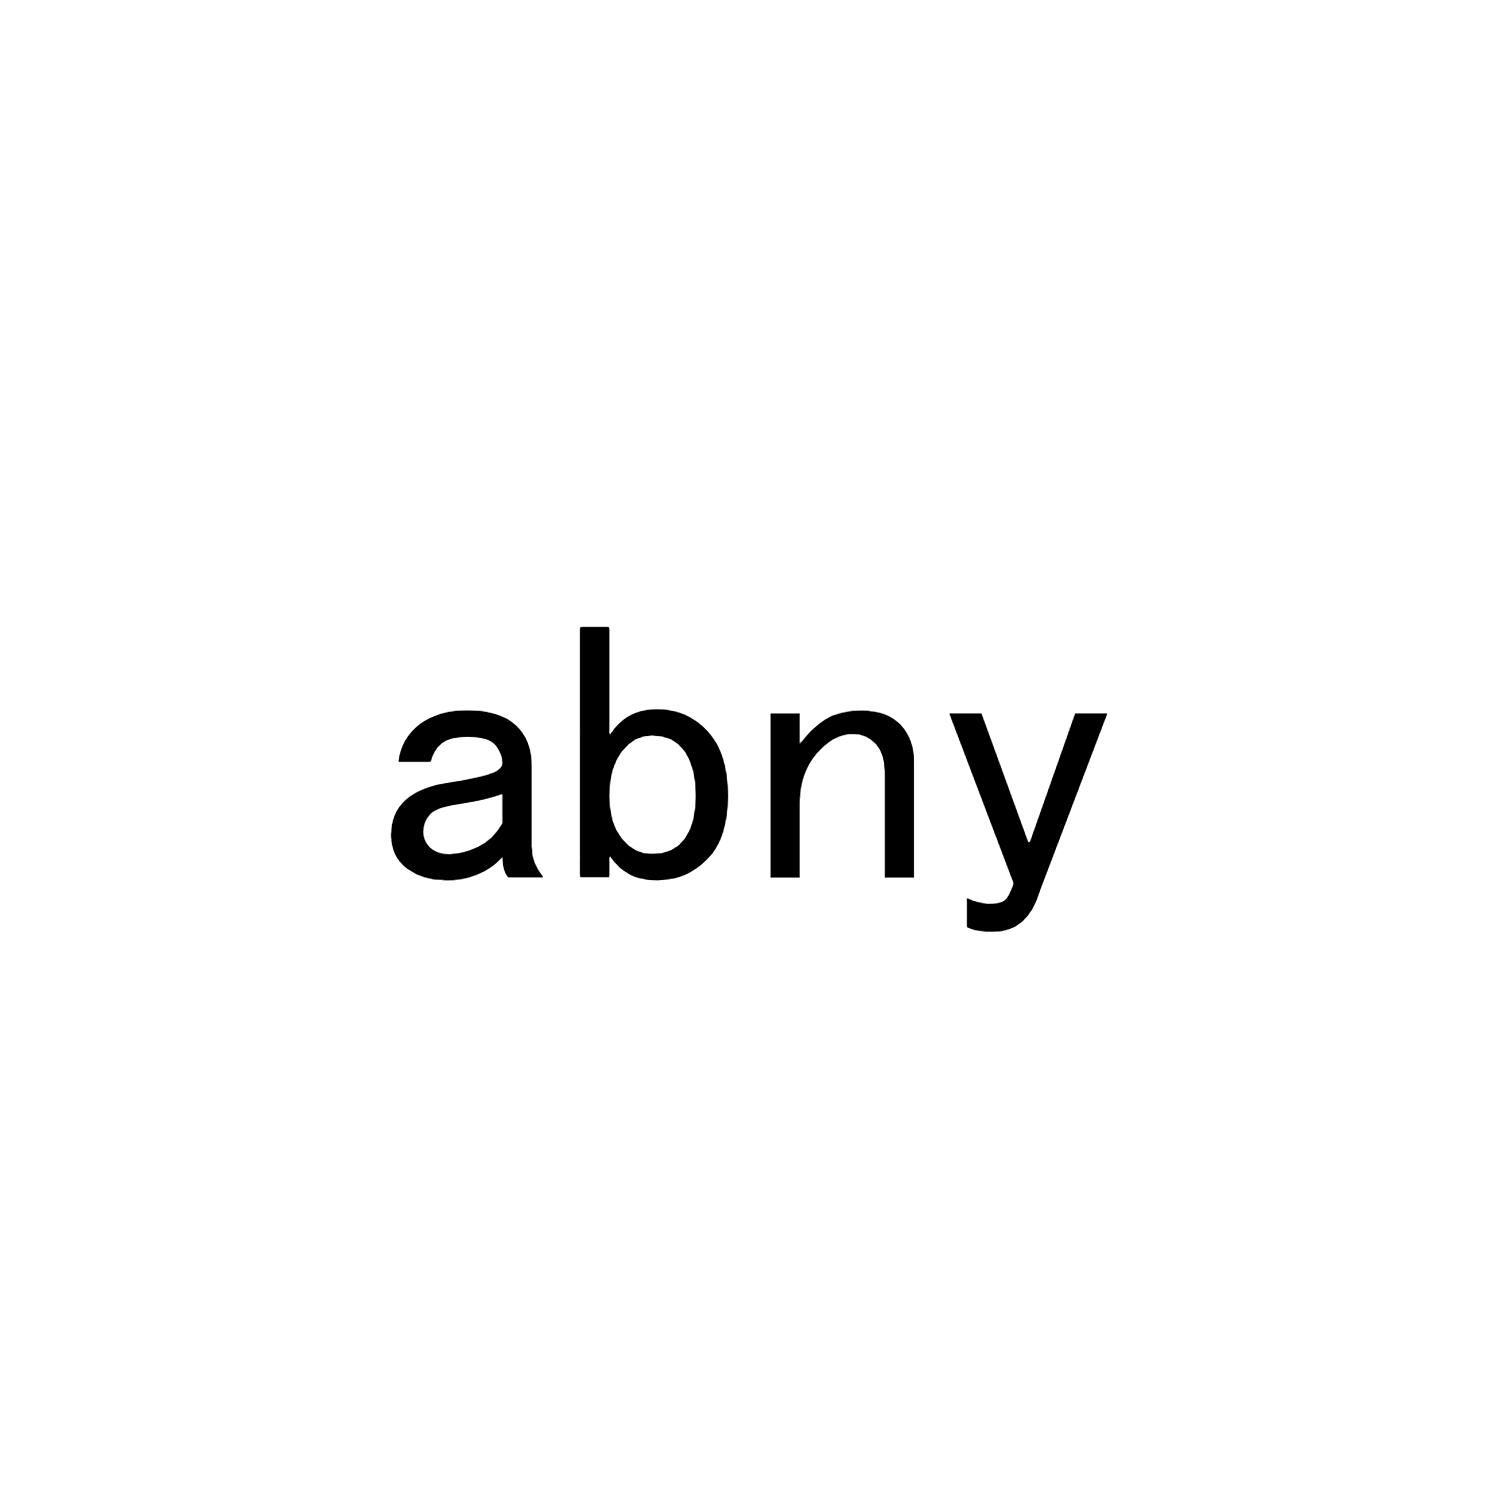 abny